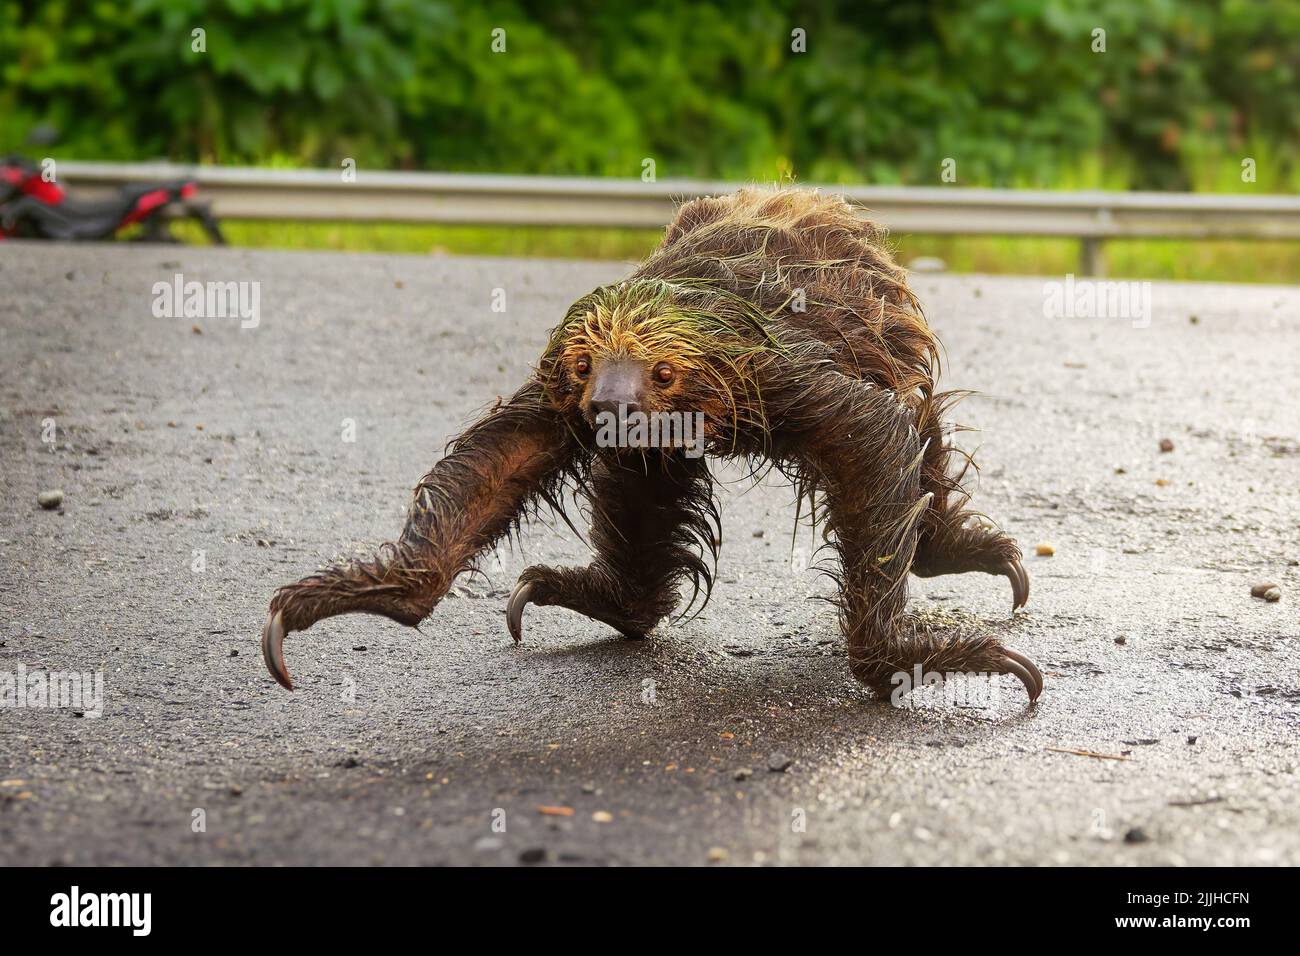 Chemin de passage à niveau du loth à deux doigts de Linnaeus (Choloepus didactylus). Adorable sloth mouillé essayant de traverser une route sale en Equateur, en Amazonie. Arrière-plan vert. Banque D'Images